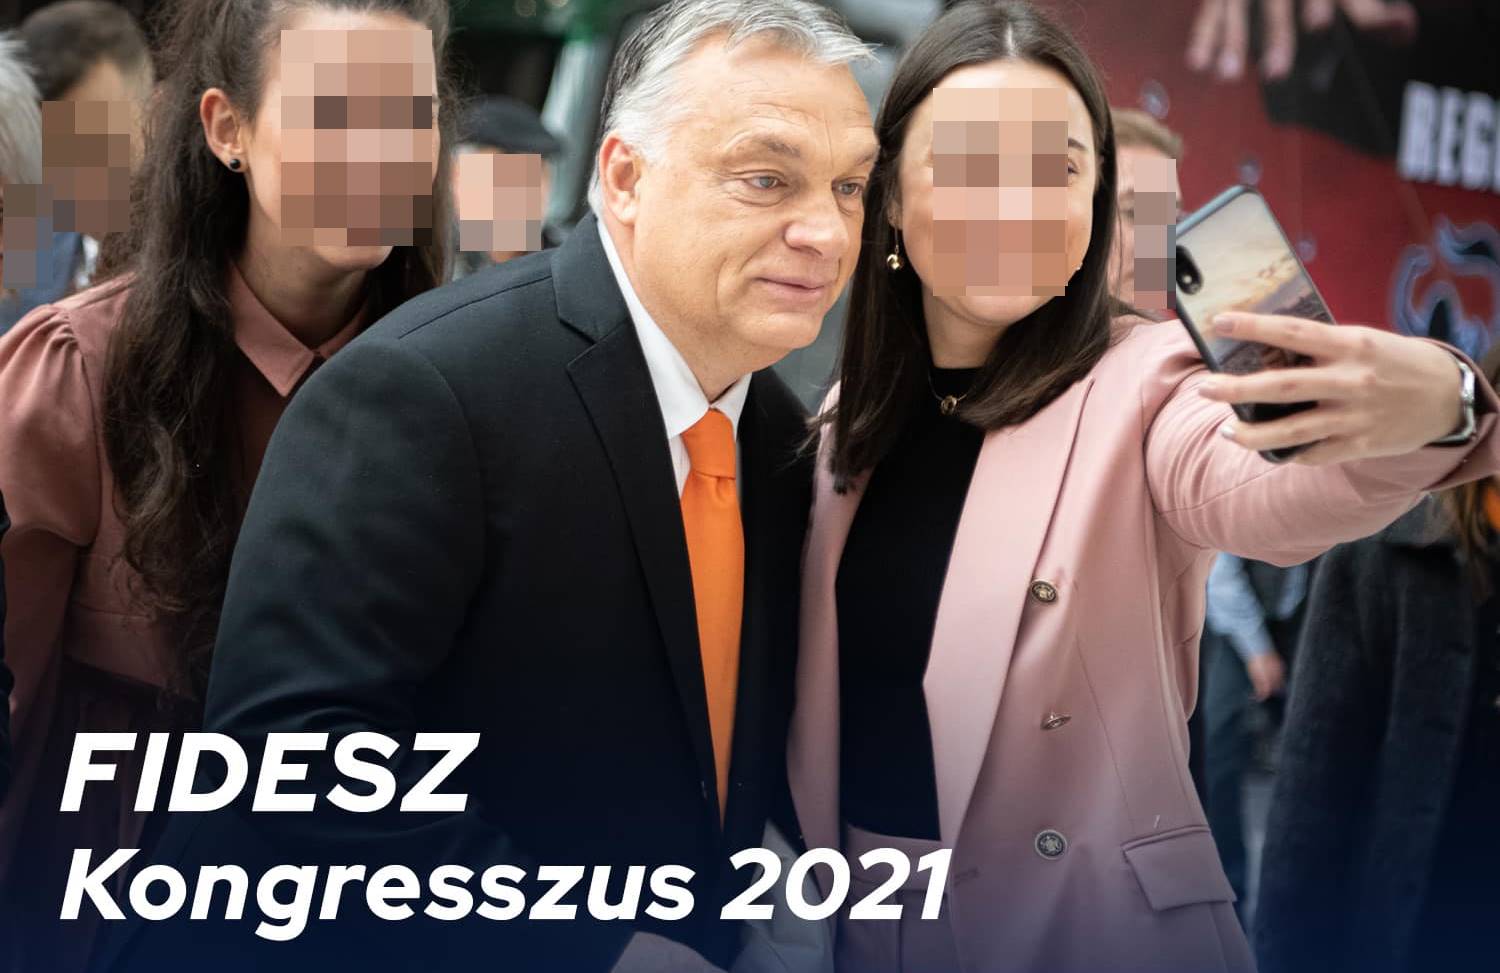 Uhh főni...az elmúlt hónapok csatározásainak nyomai nagyon kiültek az arcodra - kommentelte egy Orbán-követő a Fidesz-kongresszusi ráhangolót